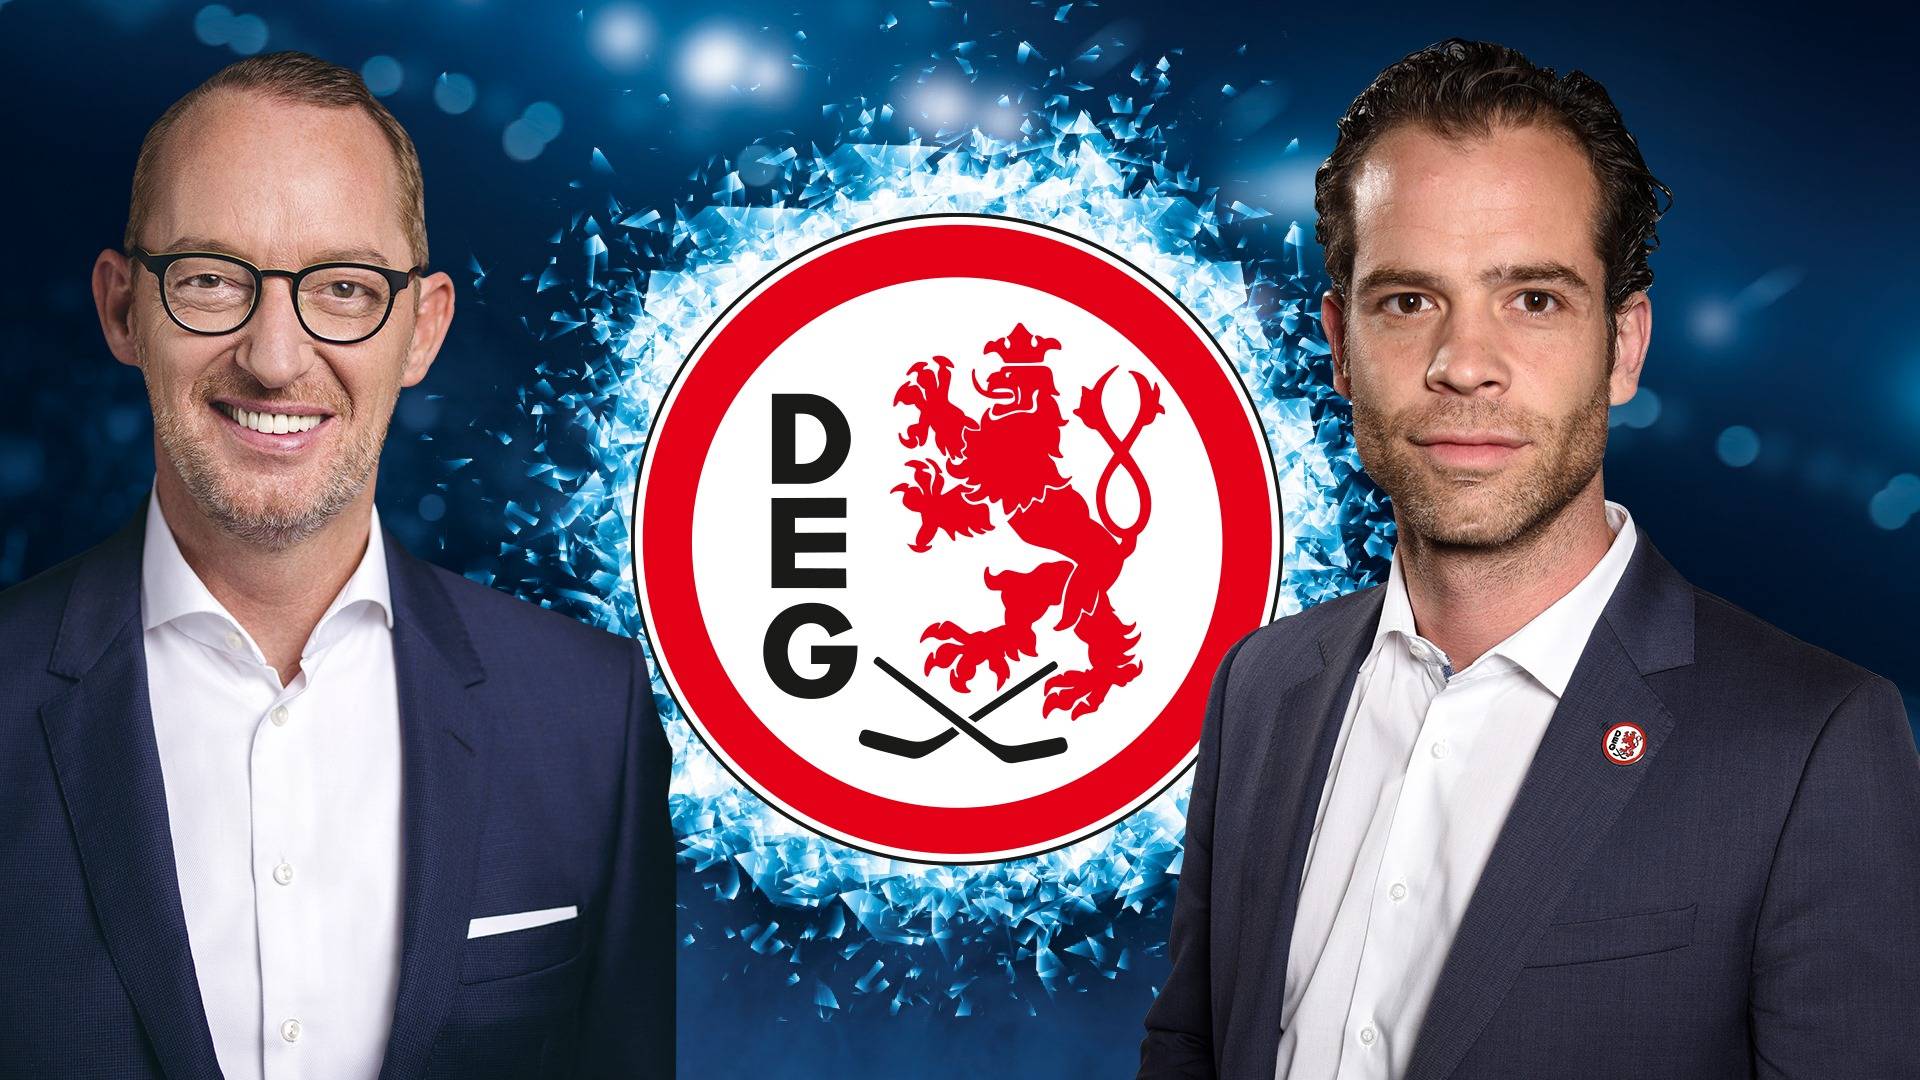  Harald Wirtz wird zukünftig die Geschäfte der DEG Eishockey GmbH leiten. Komplettiert wird die Doppelspitze durch Sportdirektor Niki Mondt, der erweiterte Kompetenzen erhält. Foto DEG 